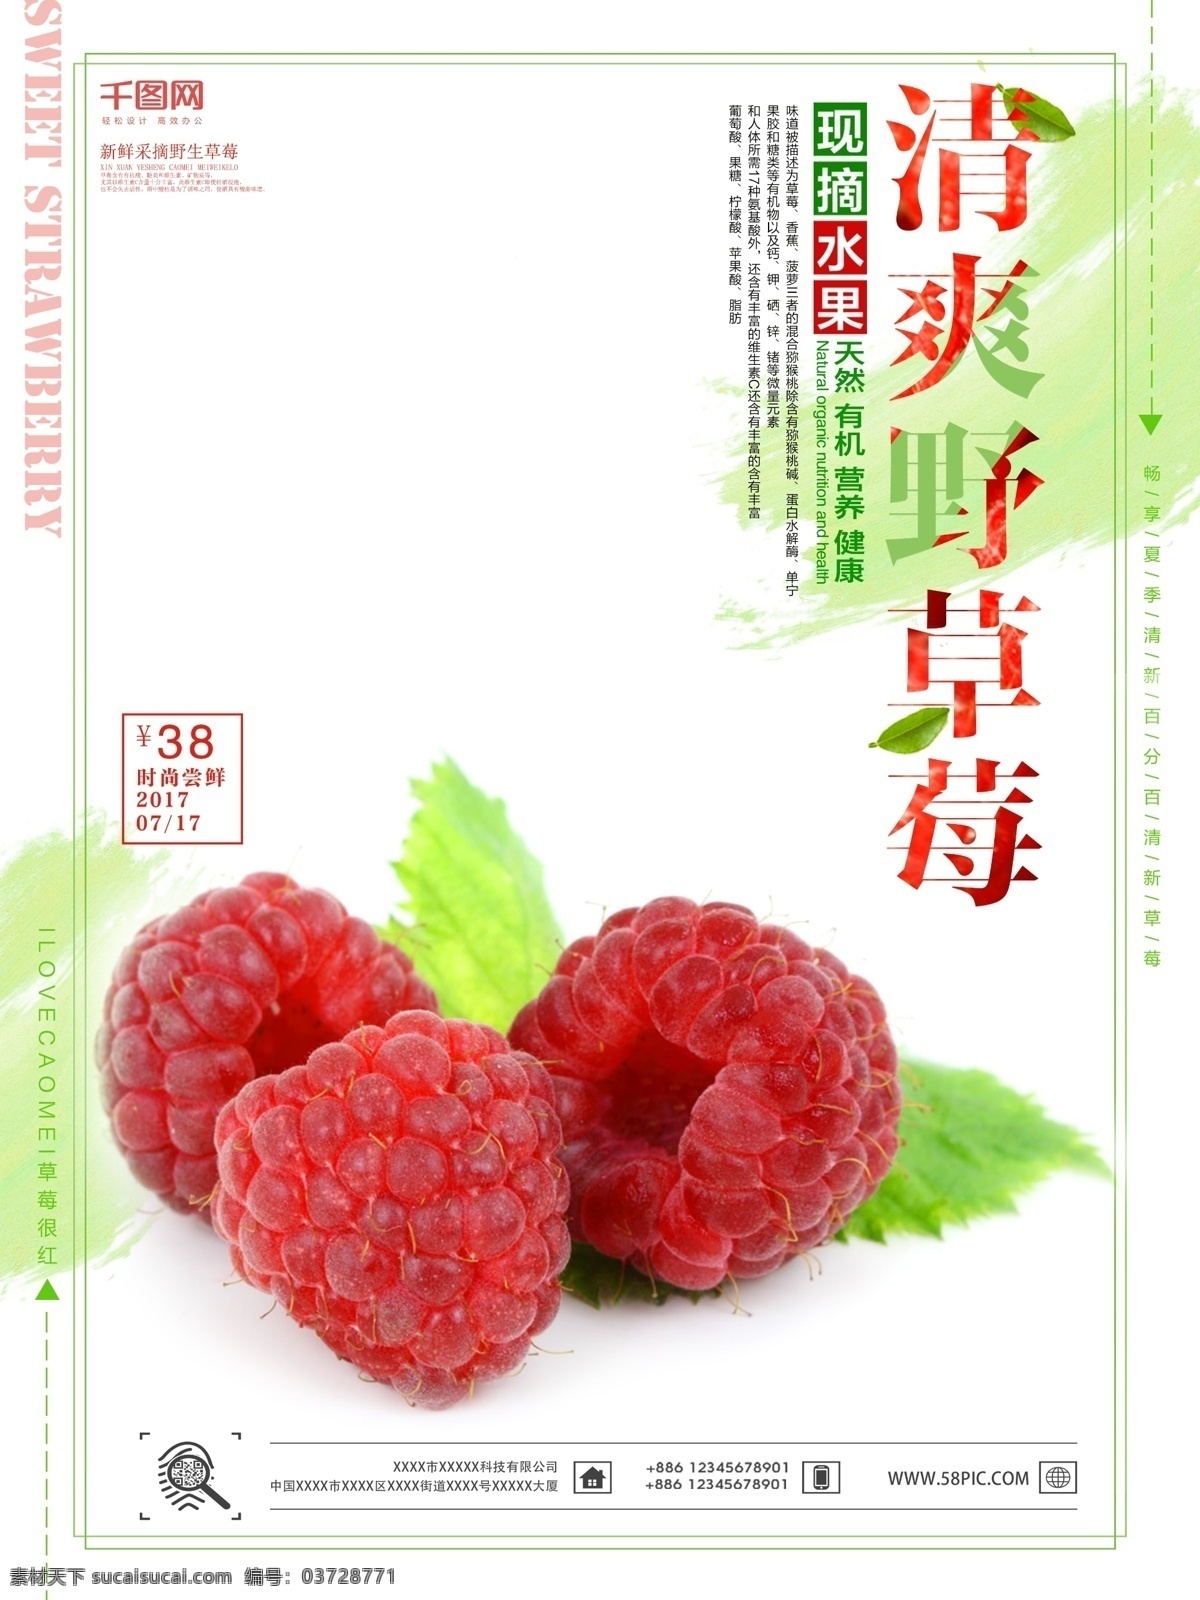 清爽 野 草莓 促销 促销海报 户外海报 户外广告 野草莓 草莓海报 草莓广告